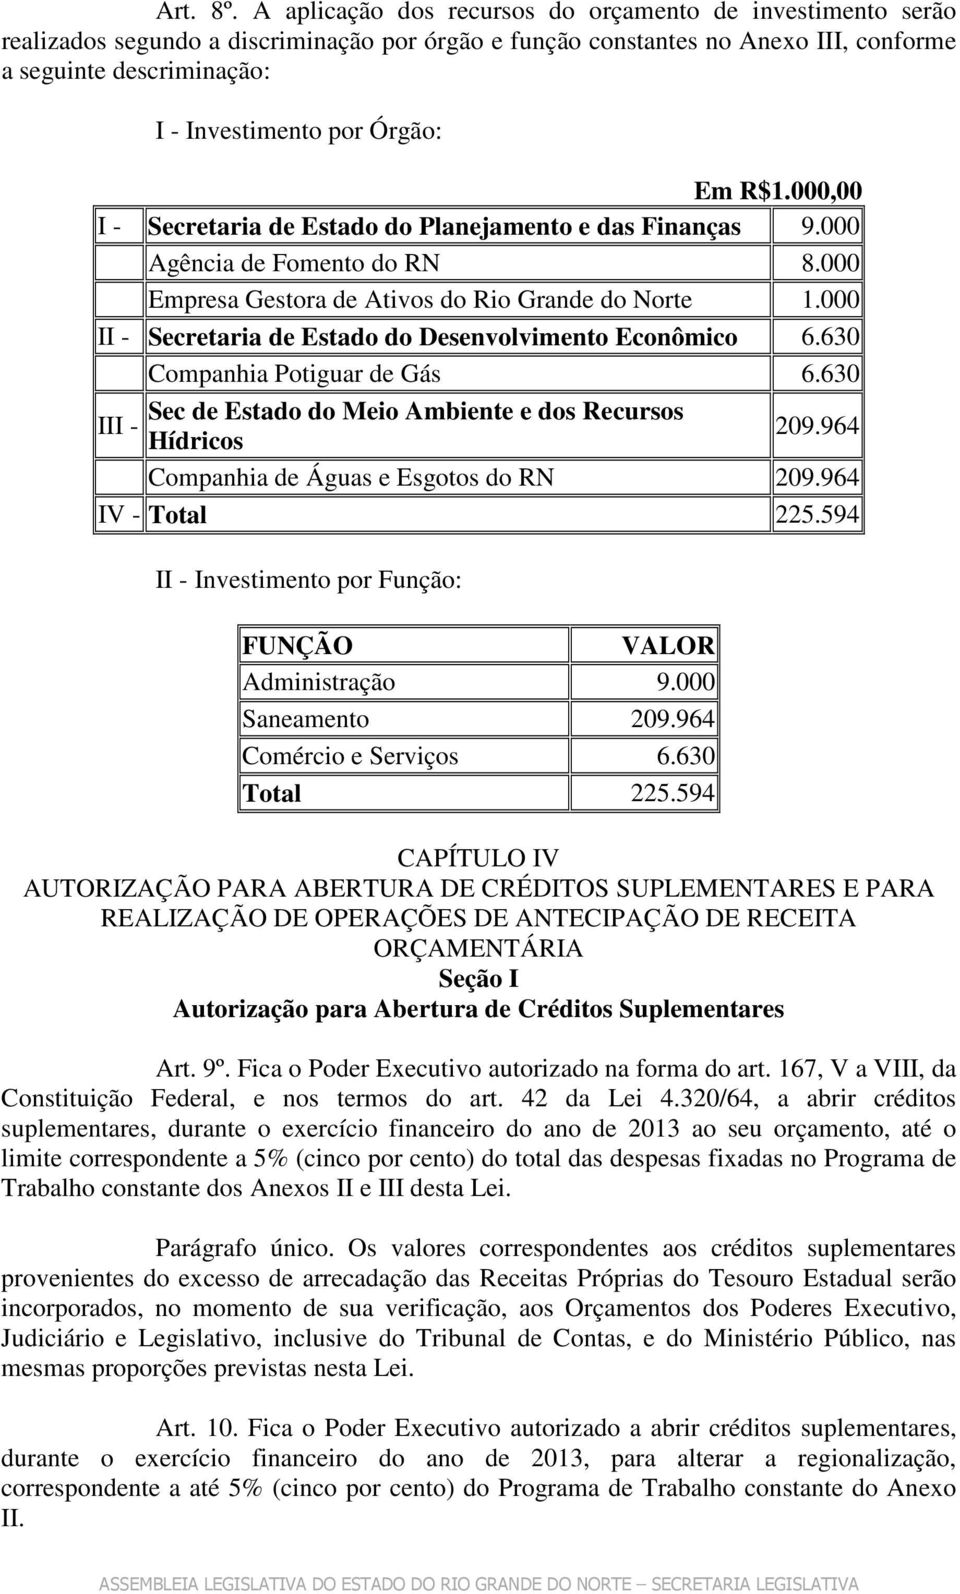 Órgão: Em R$1.000,00 I - Secretaria de Estado do Planejamento e das Finanças 9.000 Agência de Fomento do RN 8.000 Empresa Gestora de Ativos do Rio Grande do Norte 1.